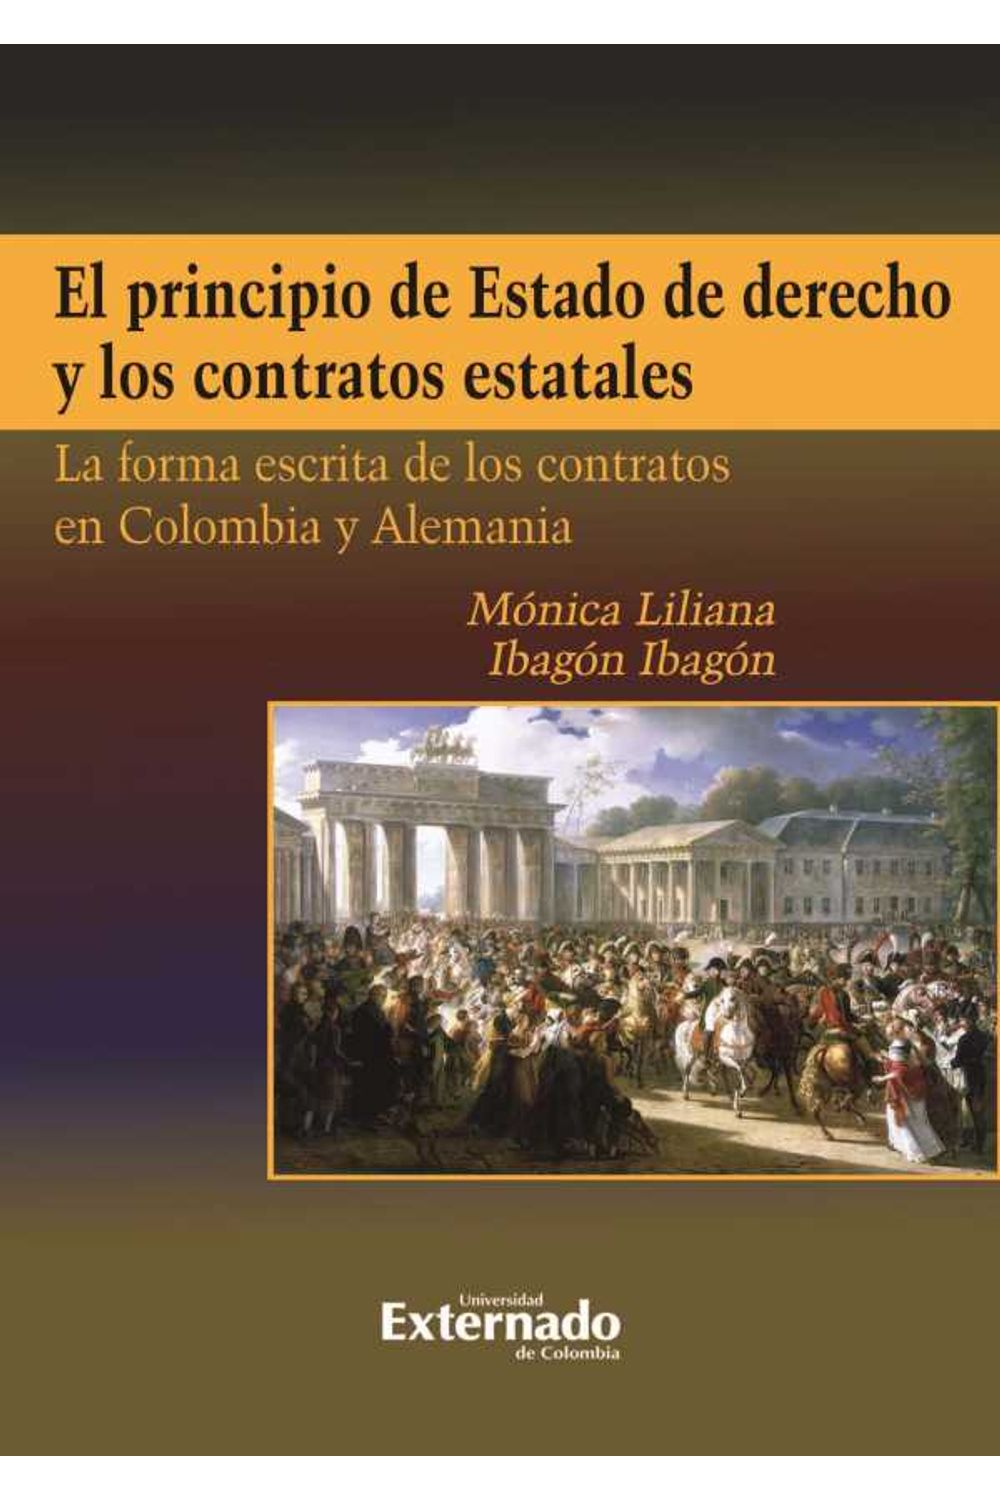 bw-el-principio-de-estado-de-derecho-y-los-contratos-estatales-u-externado-de-colombia-9789587723205